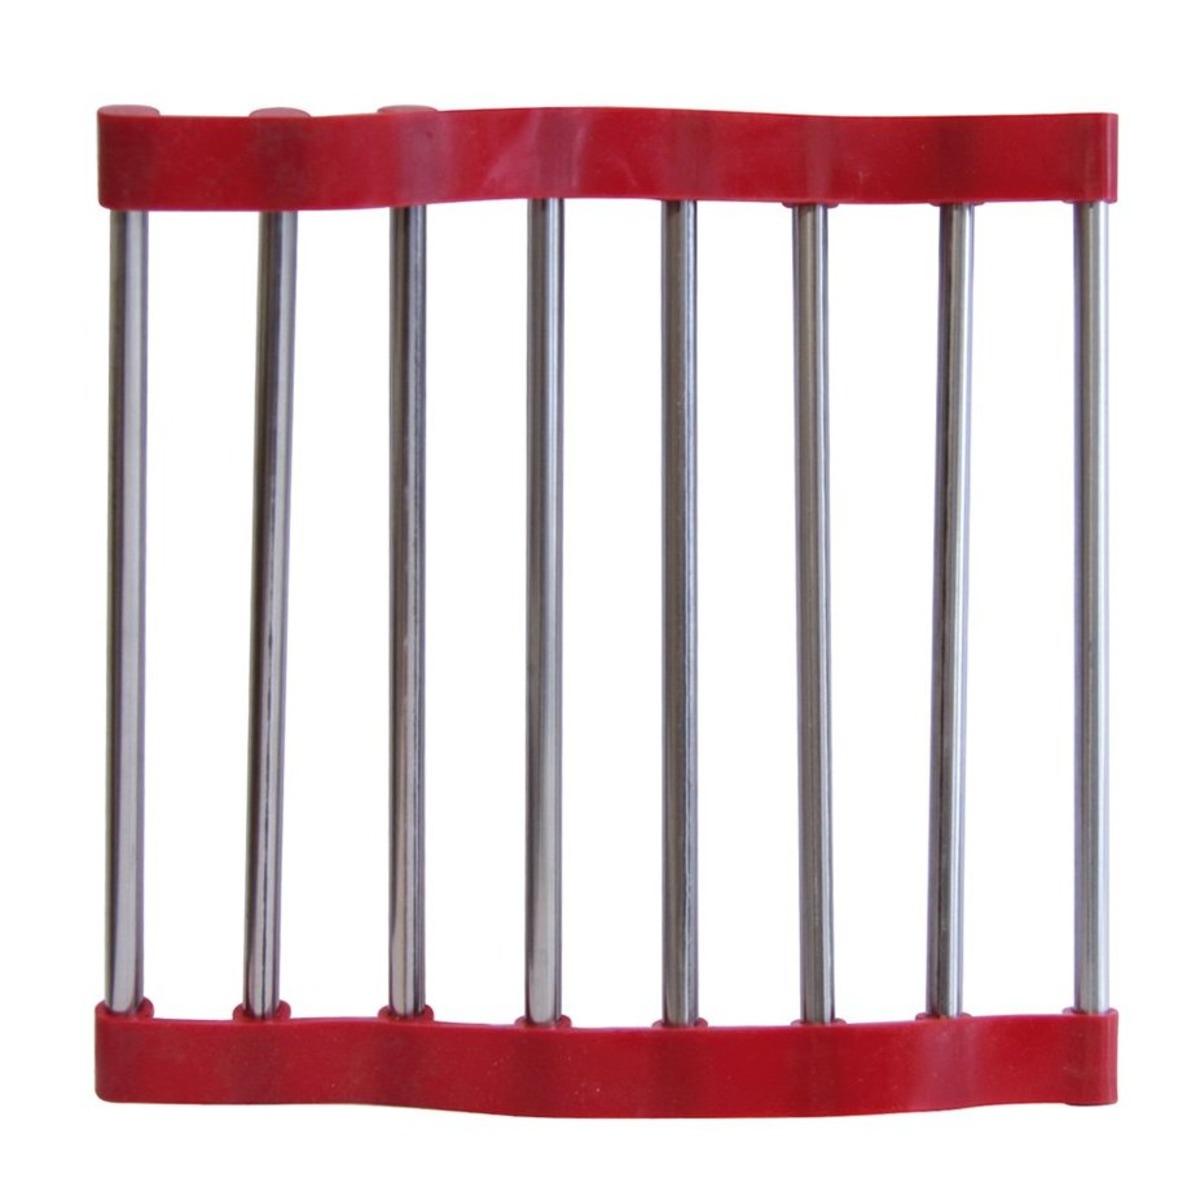 Dessous de plat enroulable antidérapant en silicone et métal - 22 x 22 cm - Rouge